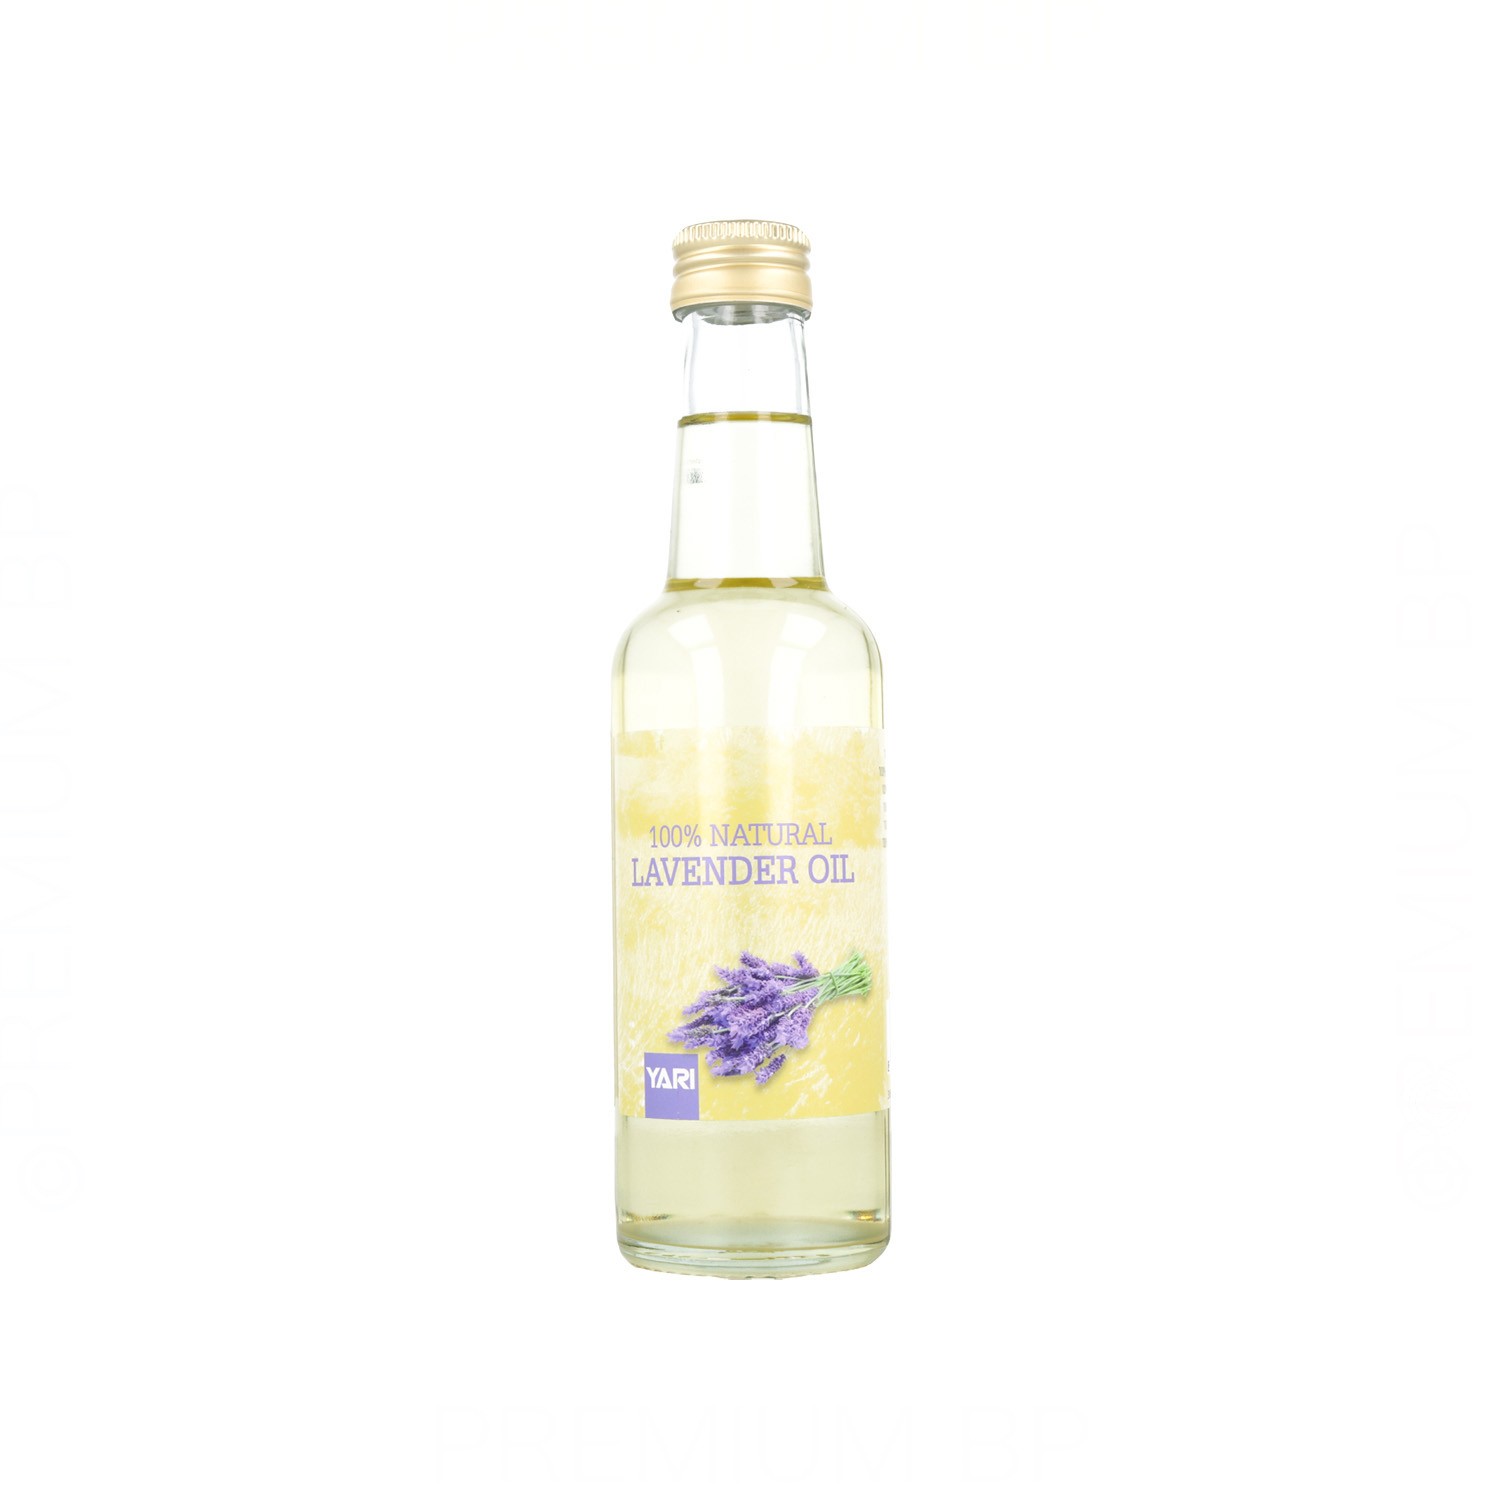 Yari Natural Lavender Oil 250 ml